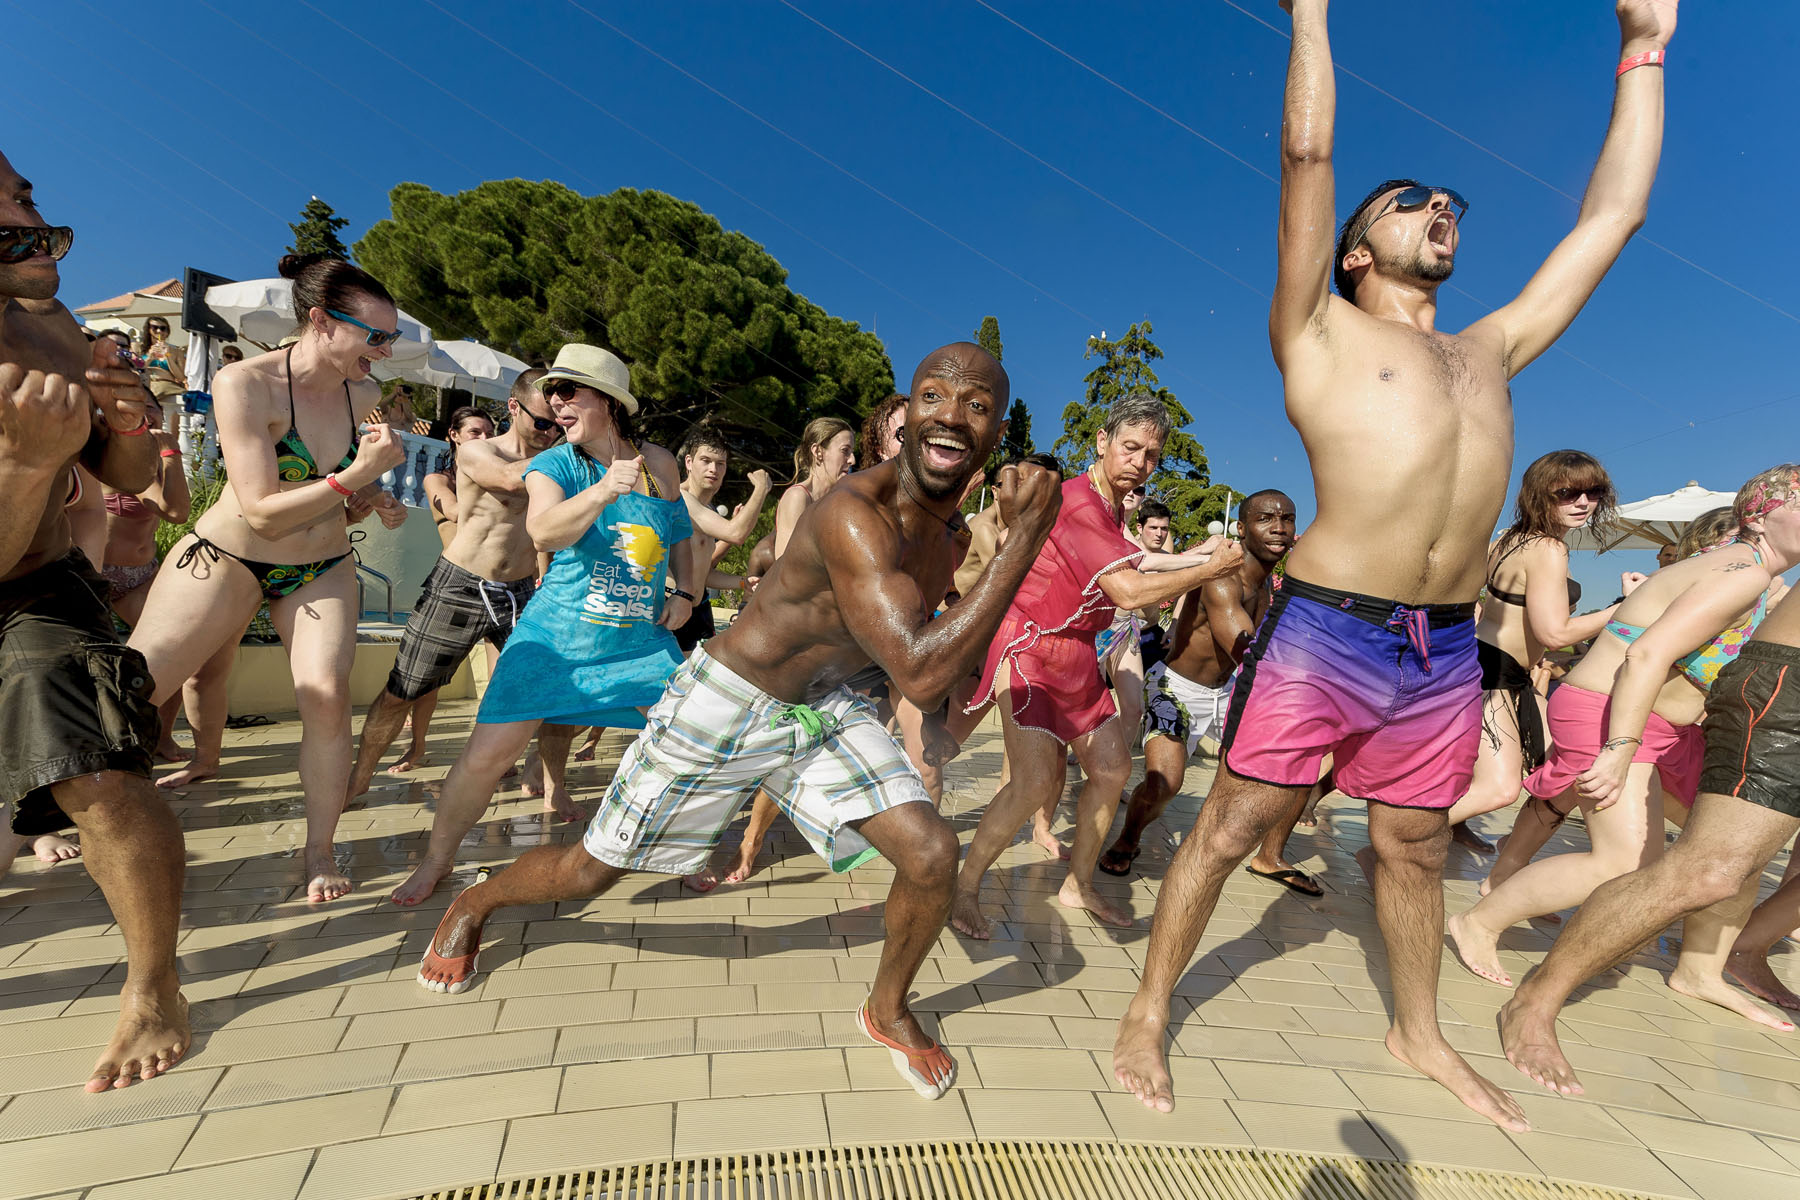 Реклама где танцуют. Сальса вечеринка на пляже. Райские тусовки. Клип 2013 где танцует много людей. Бахшилик II фестивали.